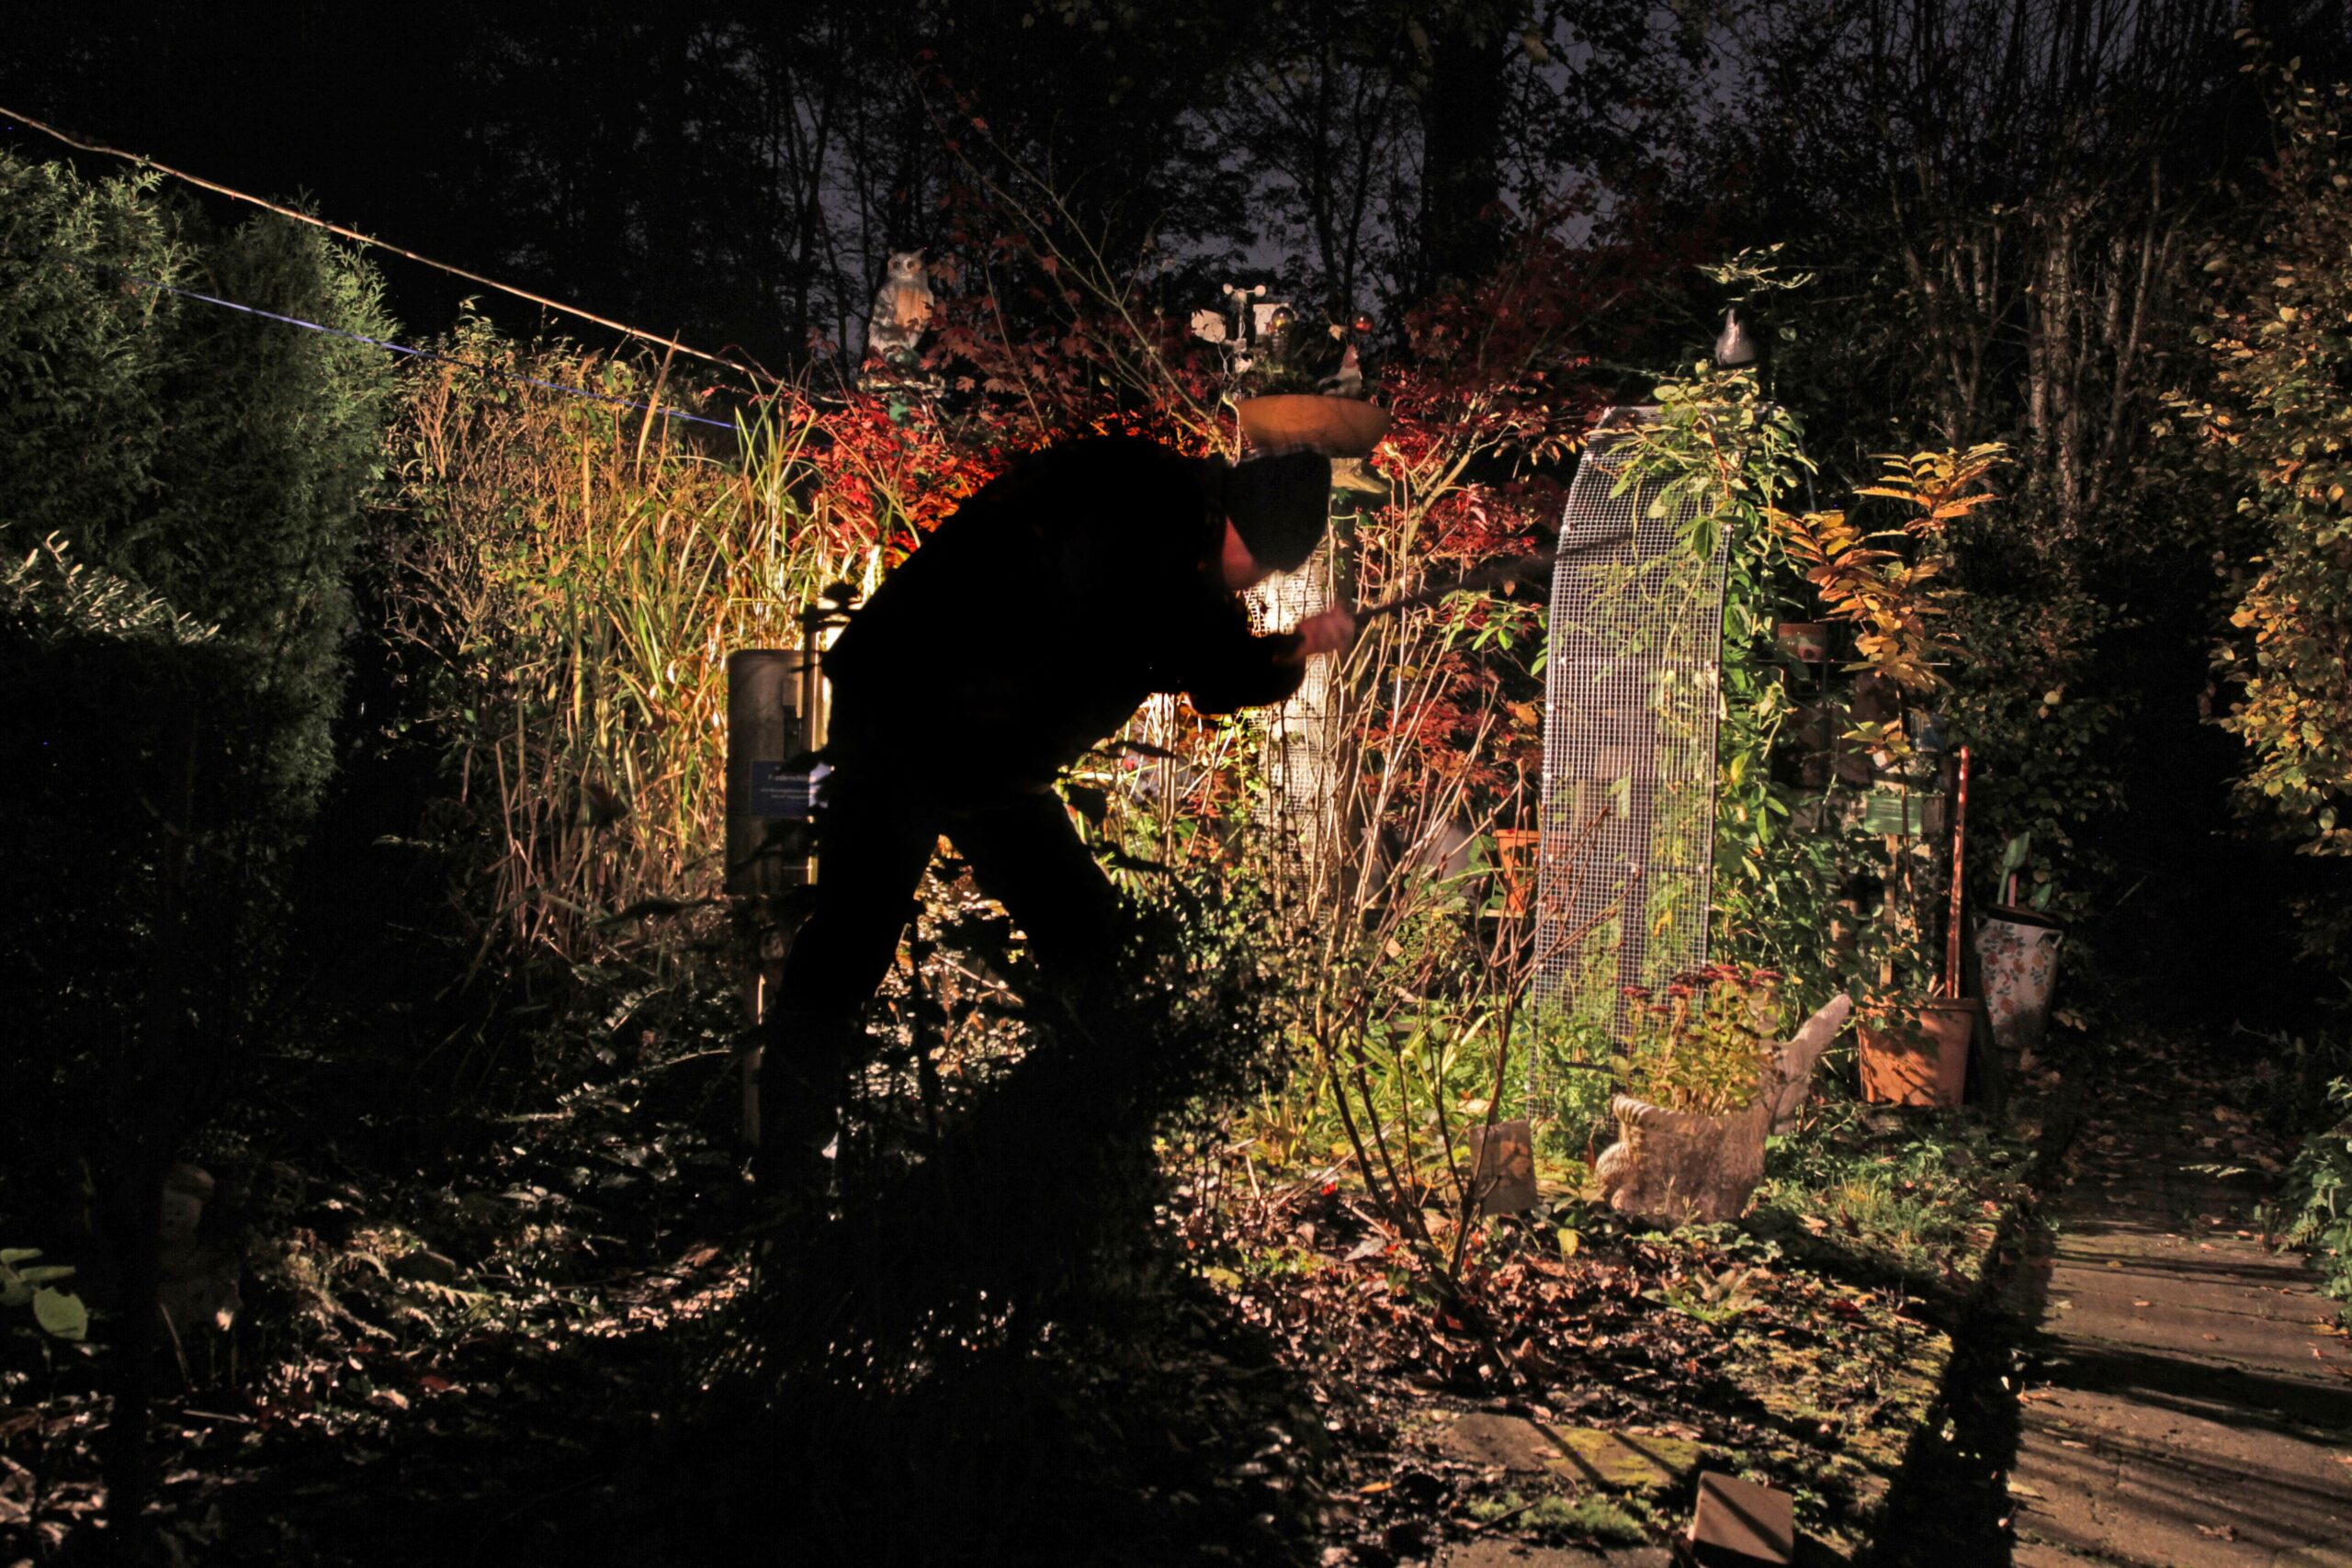 Ein Einbrecher treibt sein Unwesen in einem Garten (Symbolfoto).